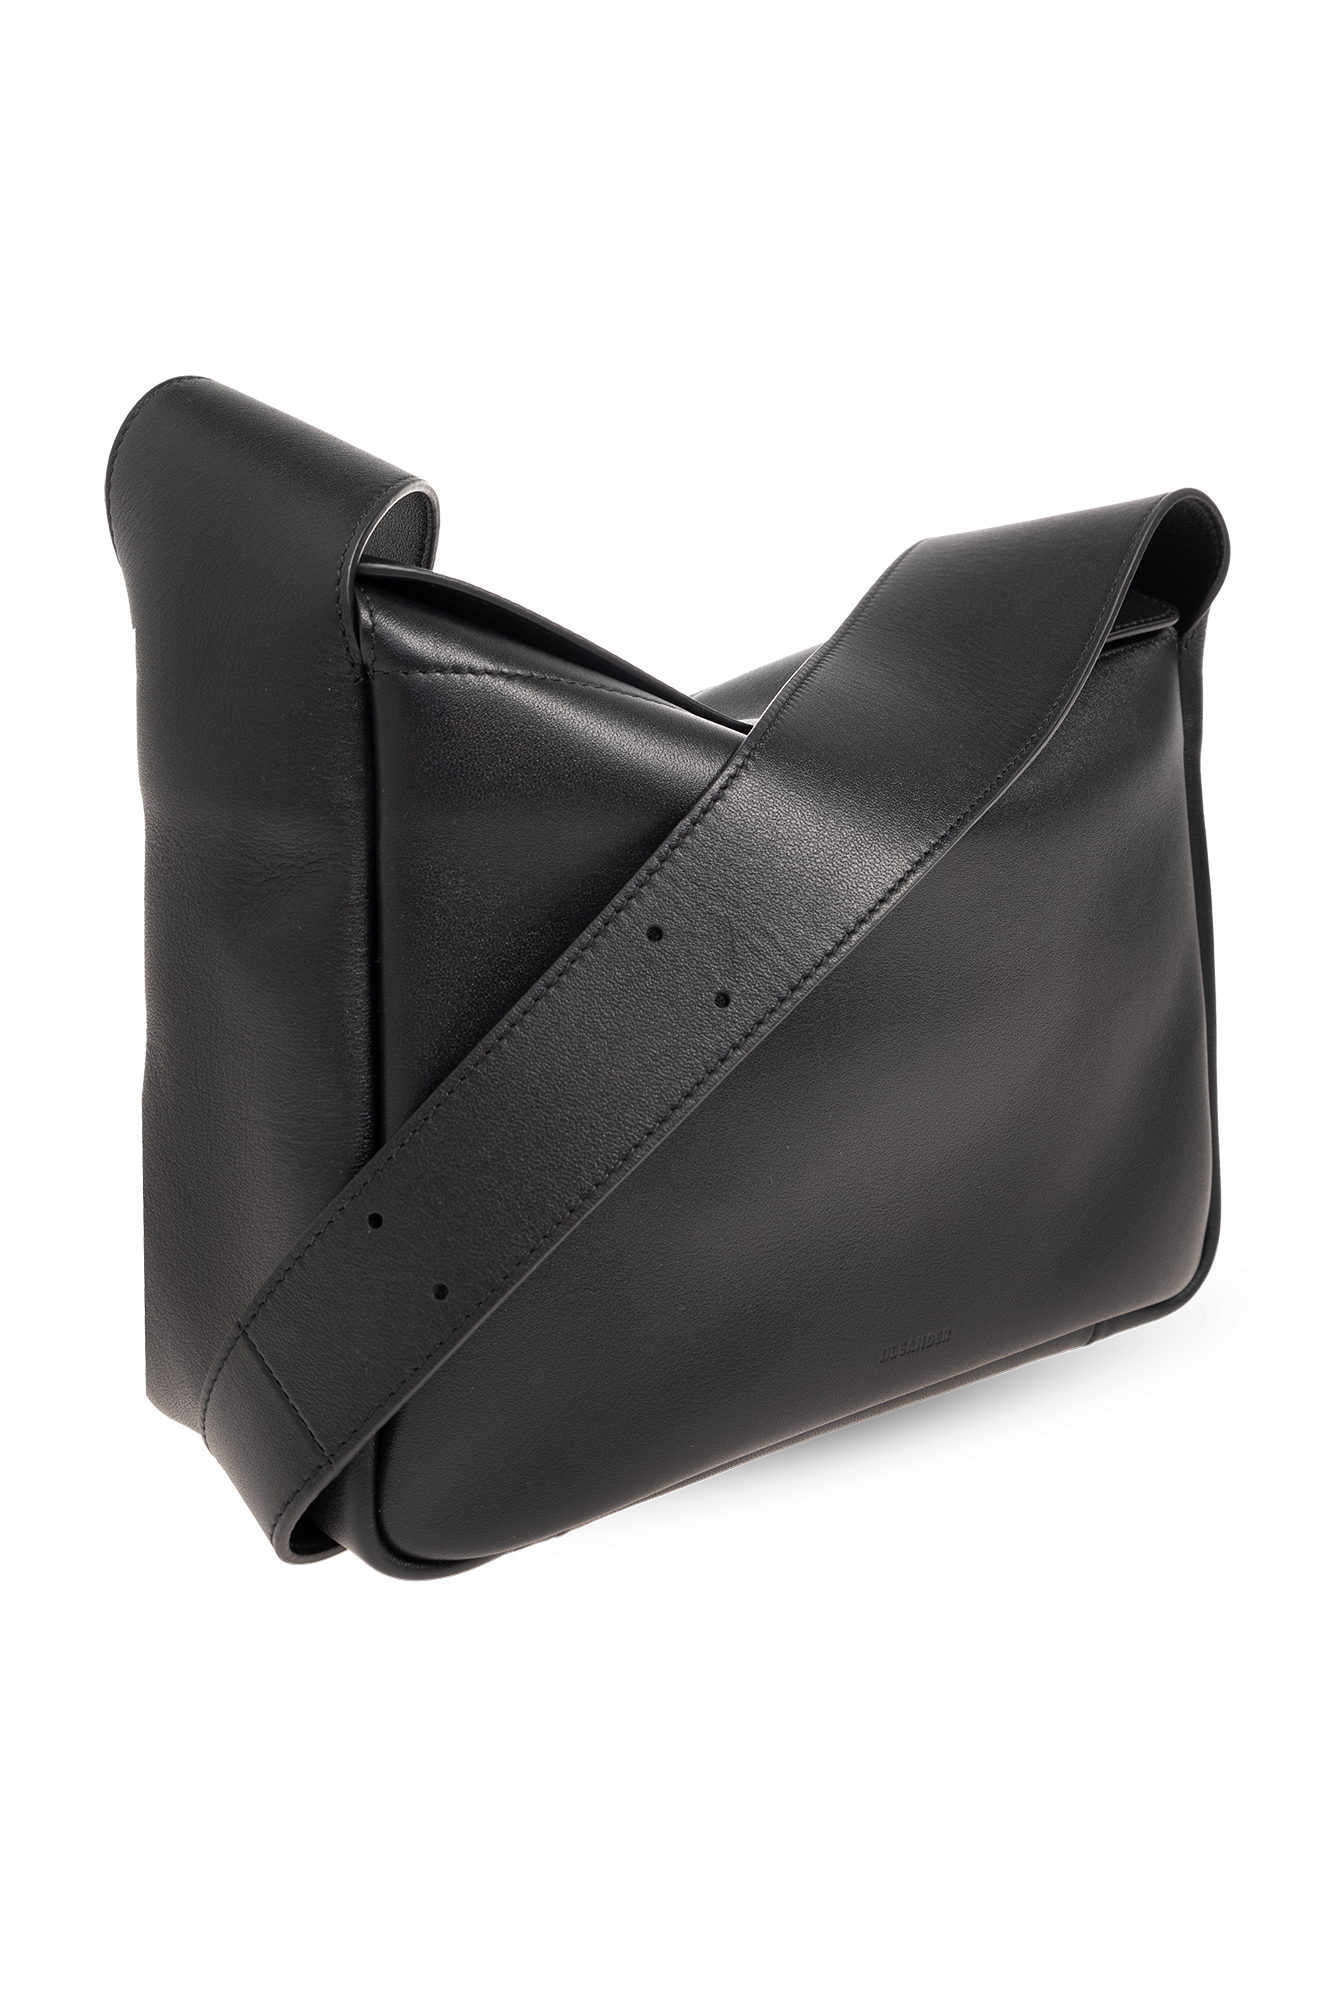 JIL SANDER ‘Flap Messenger Small’ shoulder bag